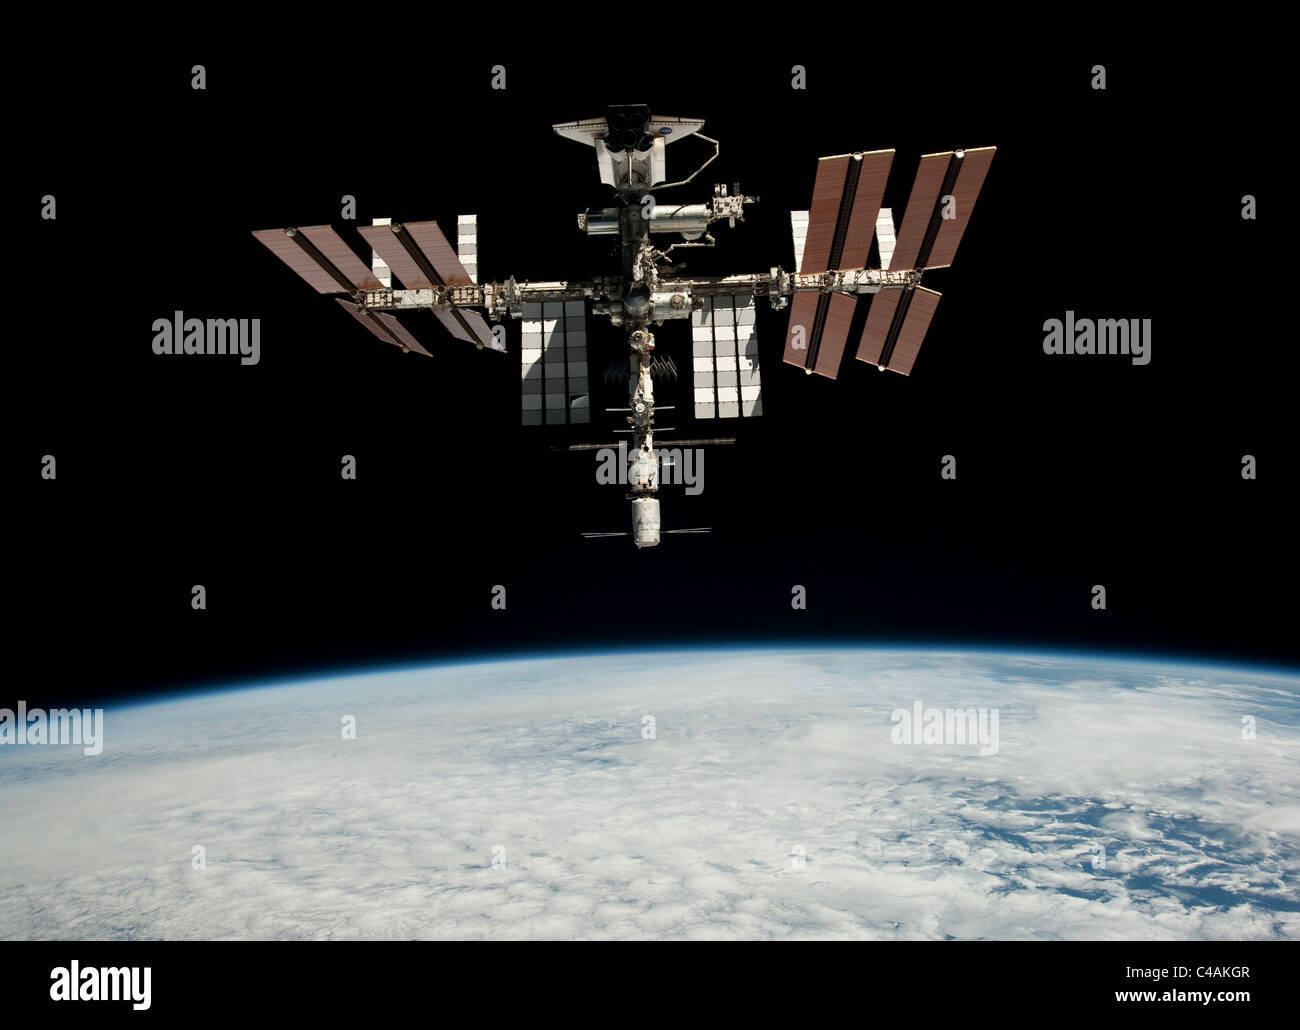 La navette spatiale Endeavour amarrée à la Station spatiale internationale Banque D'Images